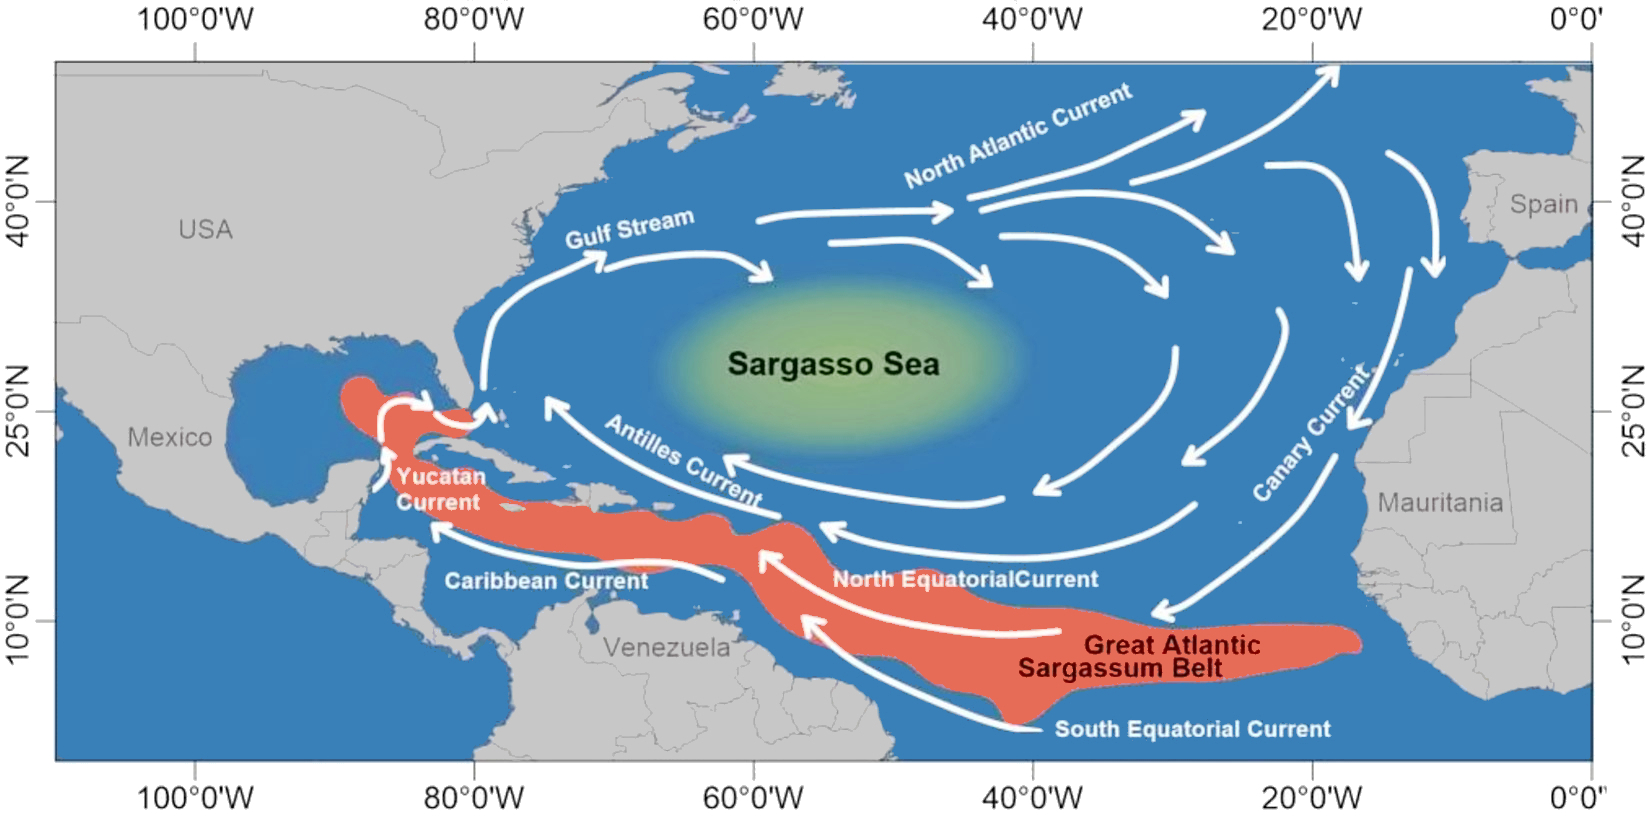 Great Atlantic Sargassum Belt 2